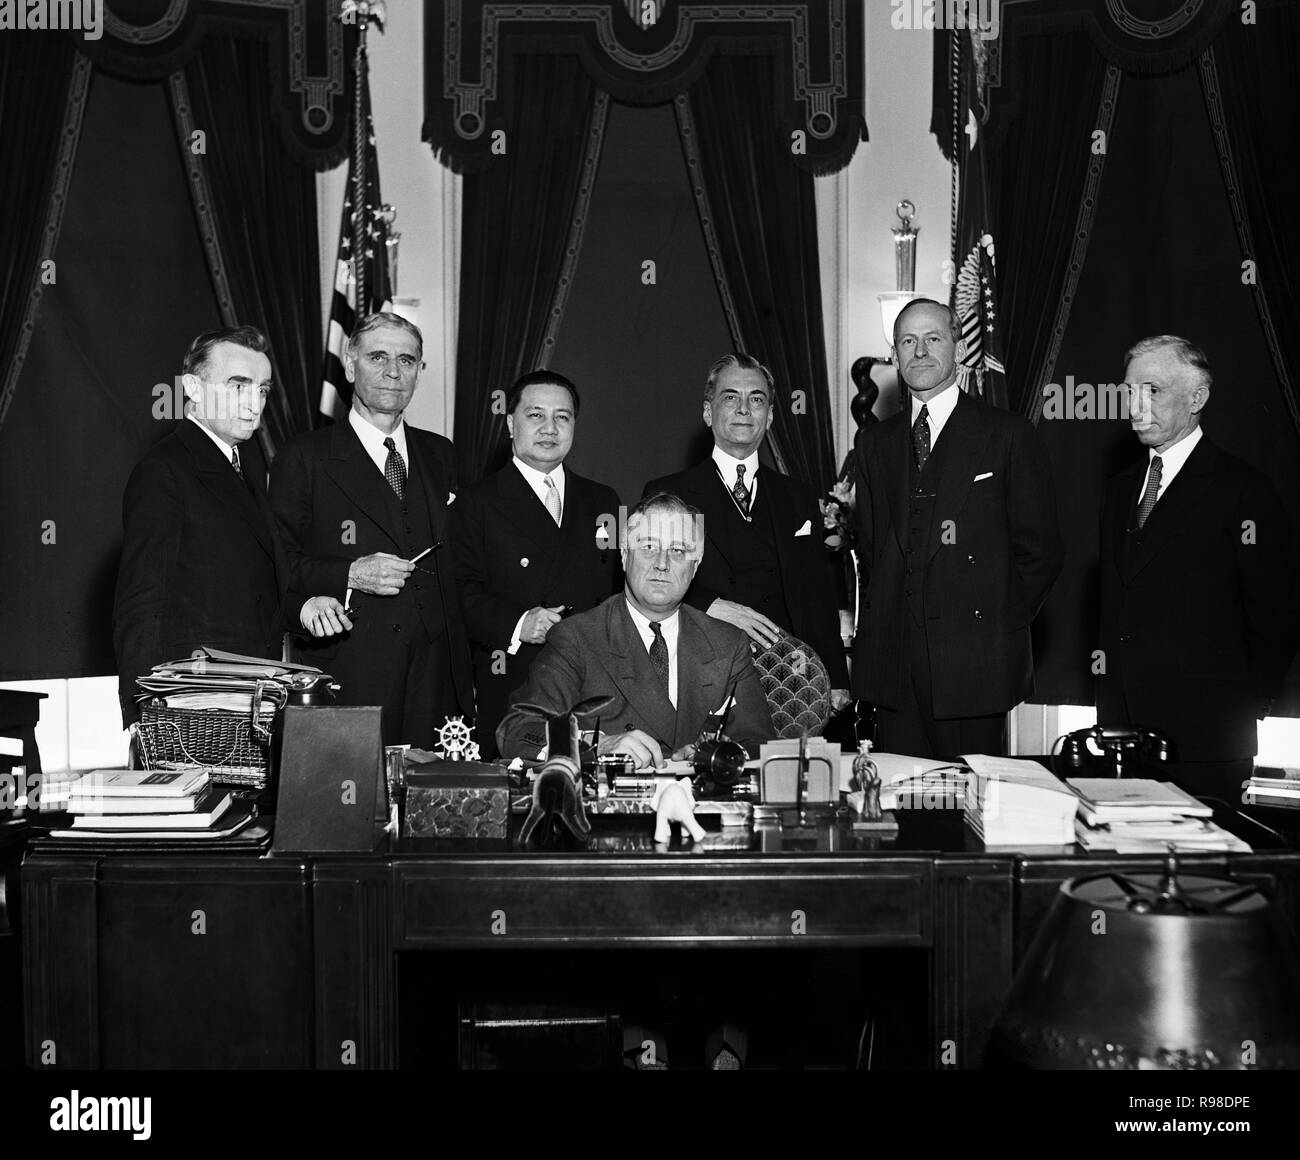 Us-Präsident Franklin Roosevelt Unterzeichnung philippinischen Unabhängigkeit handeln, Oval Office im Weißen Haus, Washington DC, USA, Harris & Ewing, 24. März 1934 Stockfoto